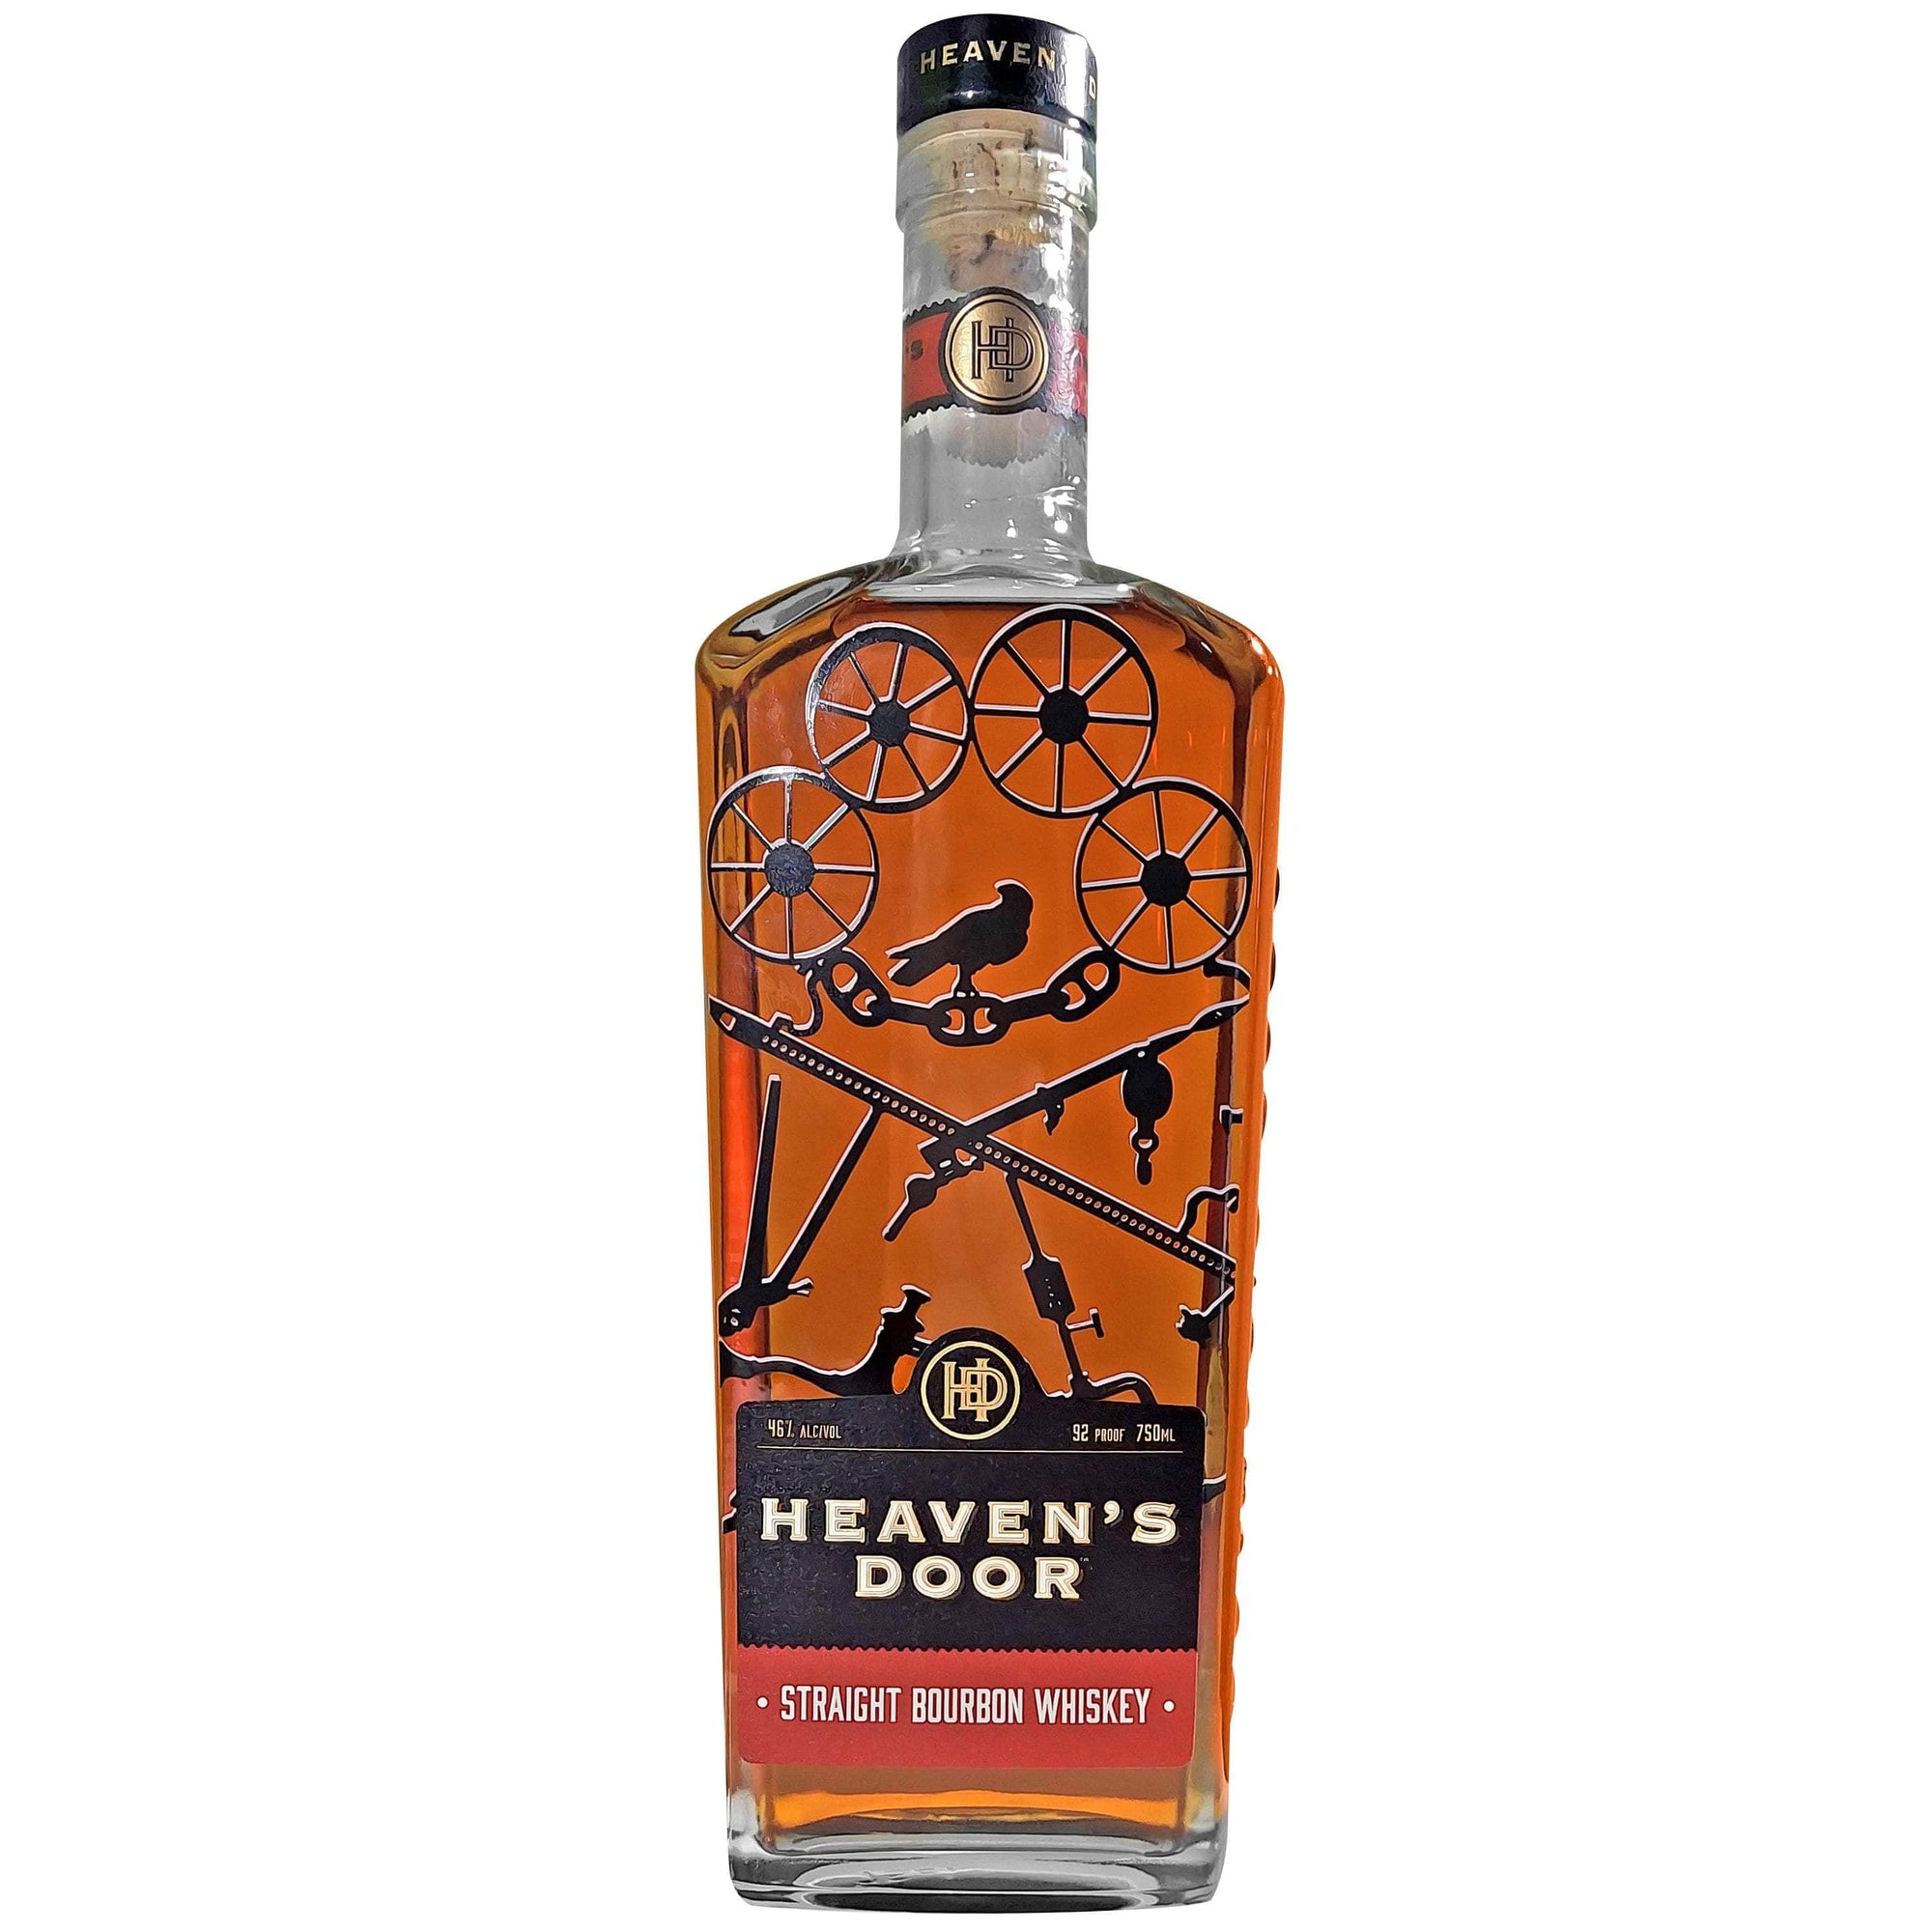 Heavens Door Whiskey Gift Basket, Heavens Door Bourbon